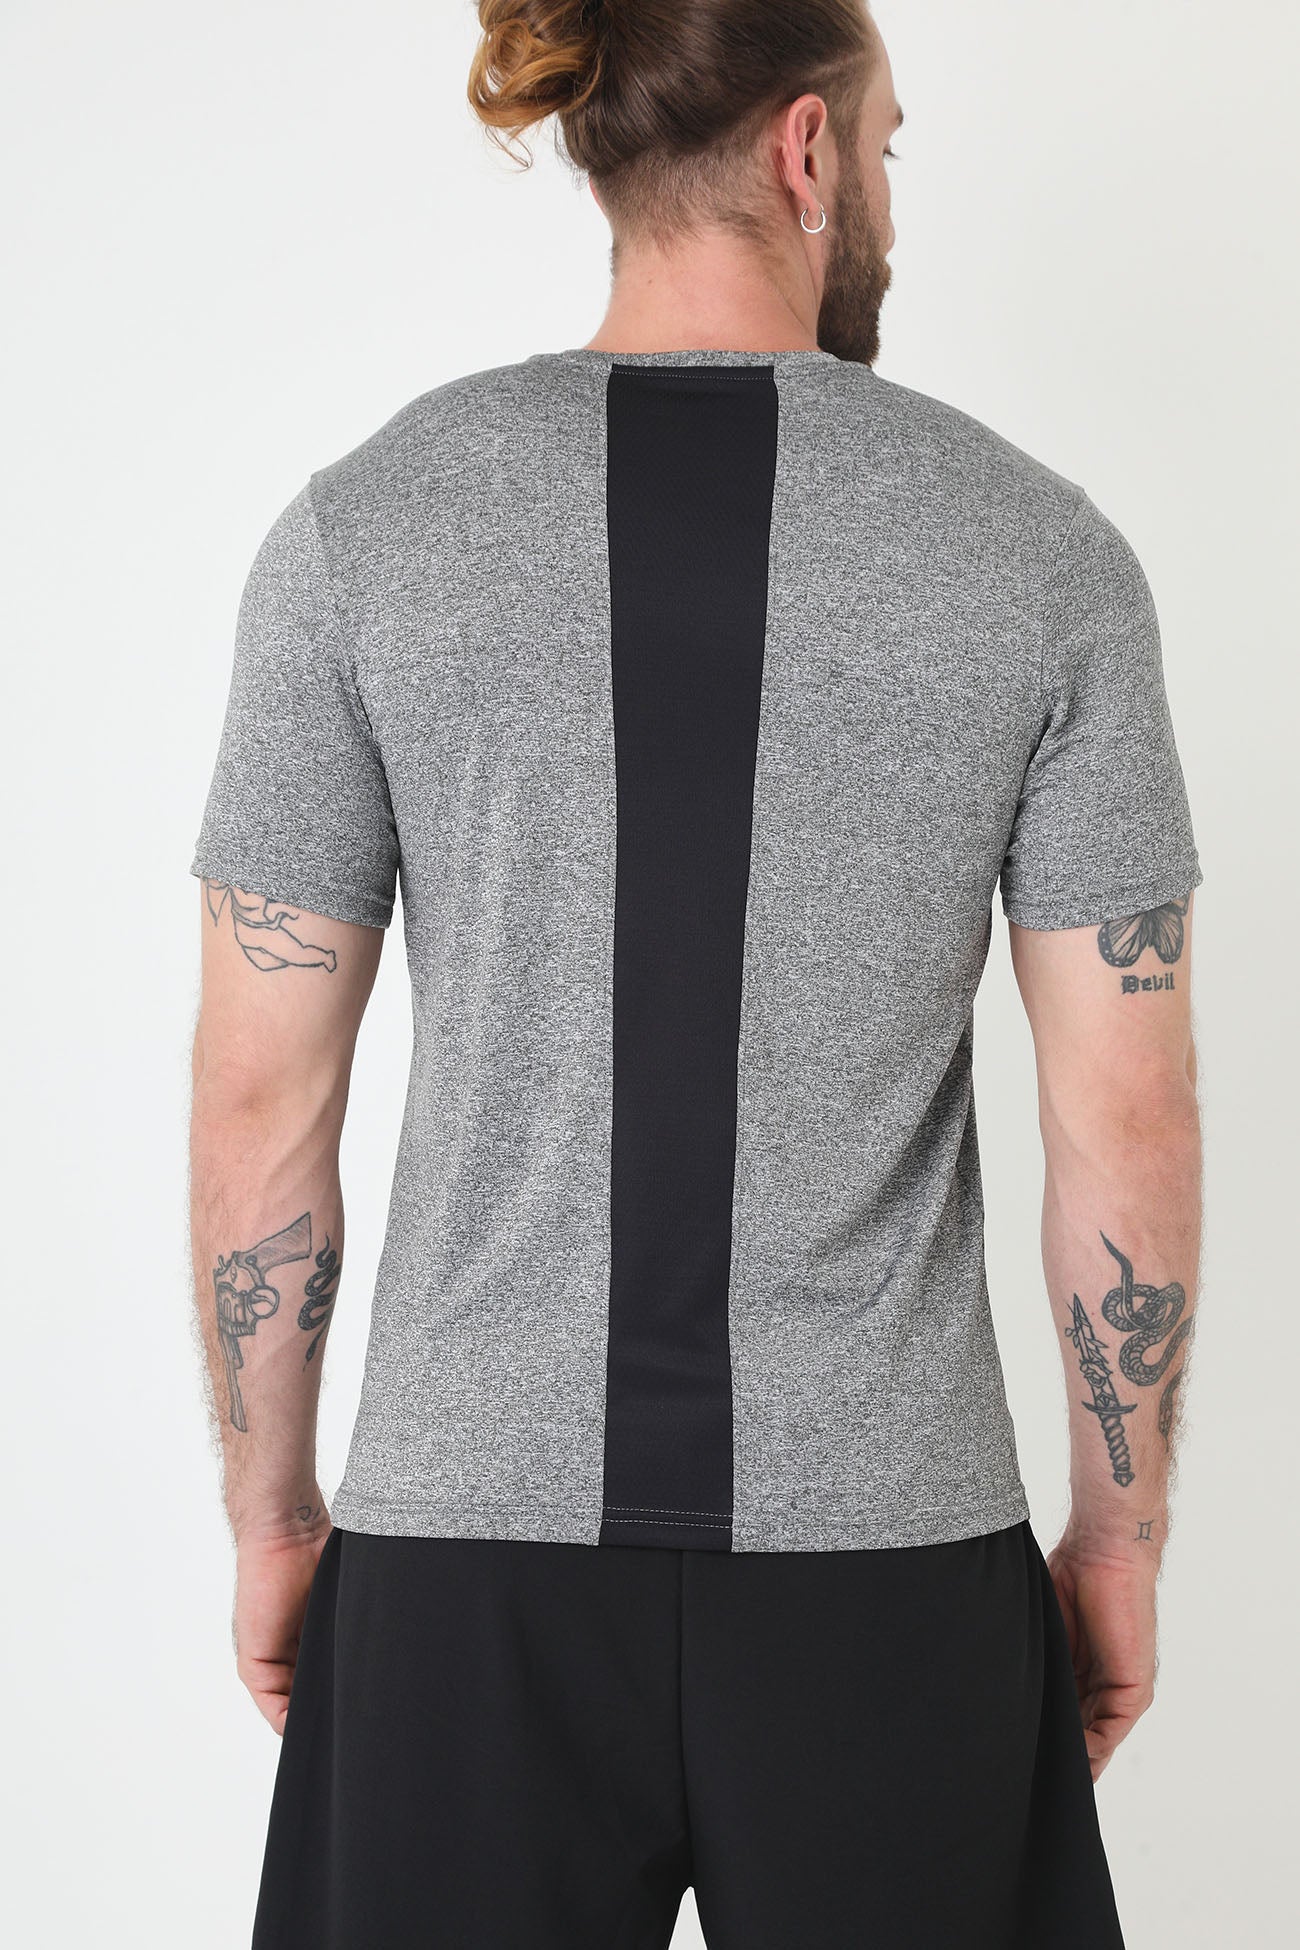 Camiseta deportiva gris manga corta, bloque en centro espalda y cuello redondo para hombre